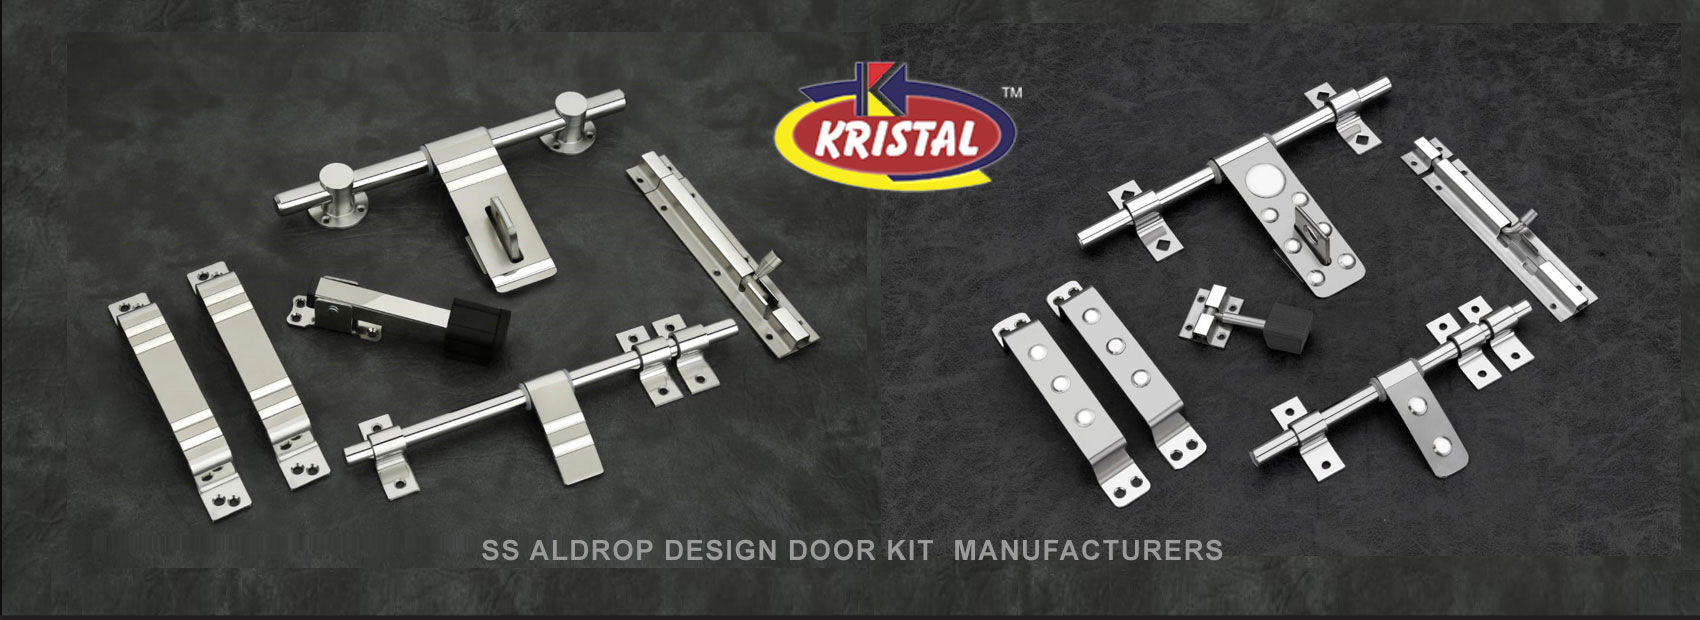 Kristal Industries Hardware Door Aldrop Handle Kit Manufacturers Exporters Rajkot